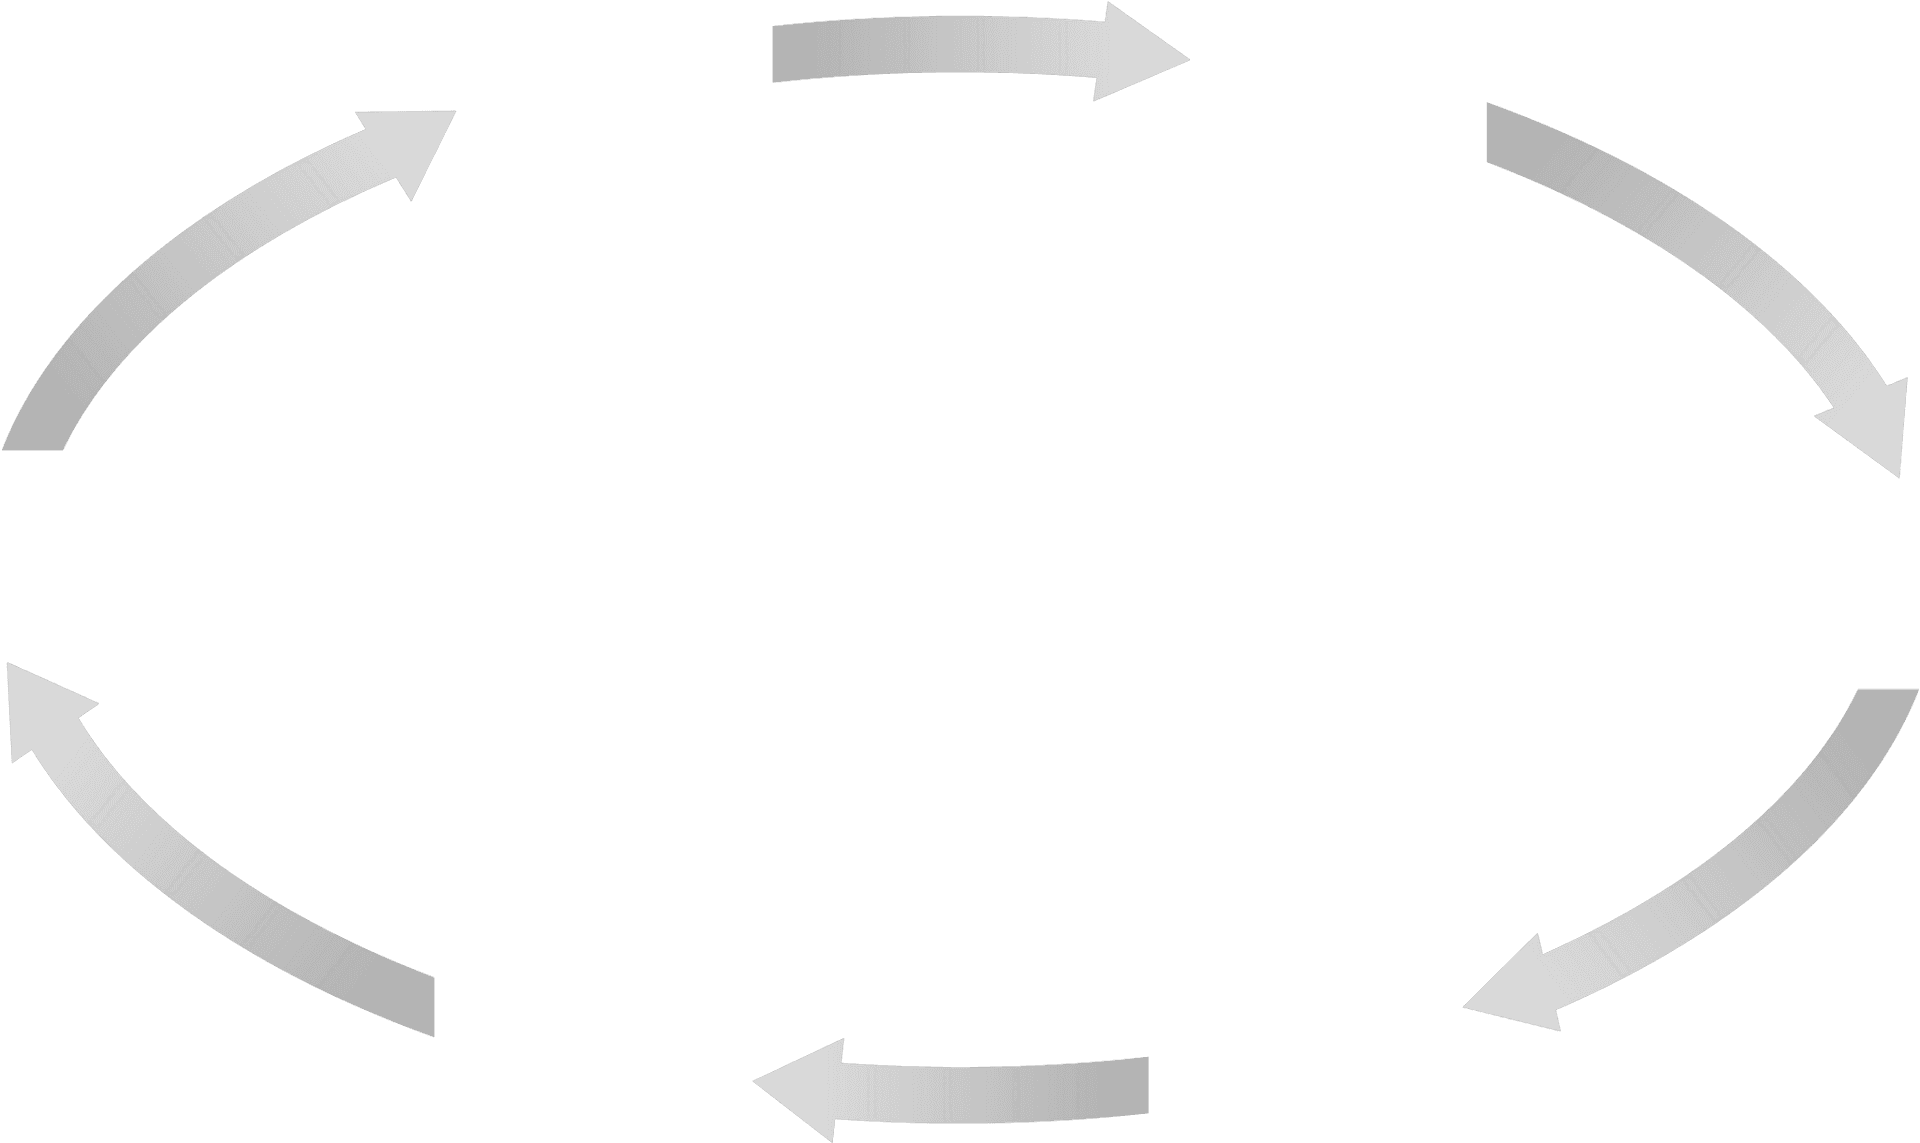 Circular Arrow Process Flow Graphic PNG